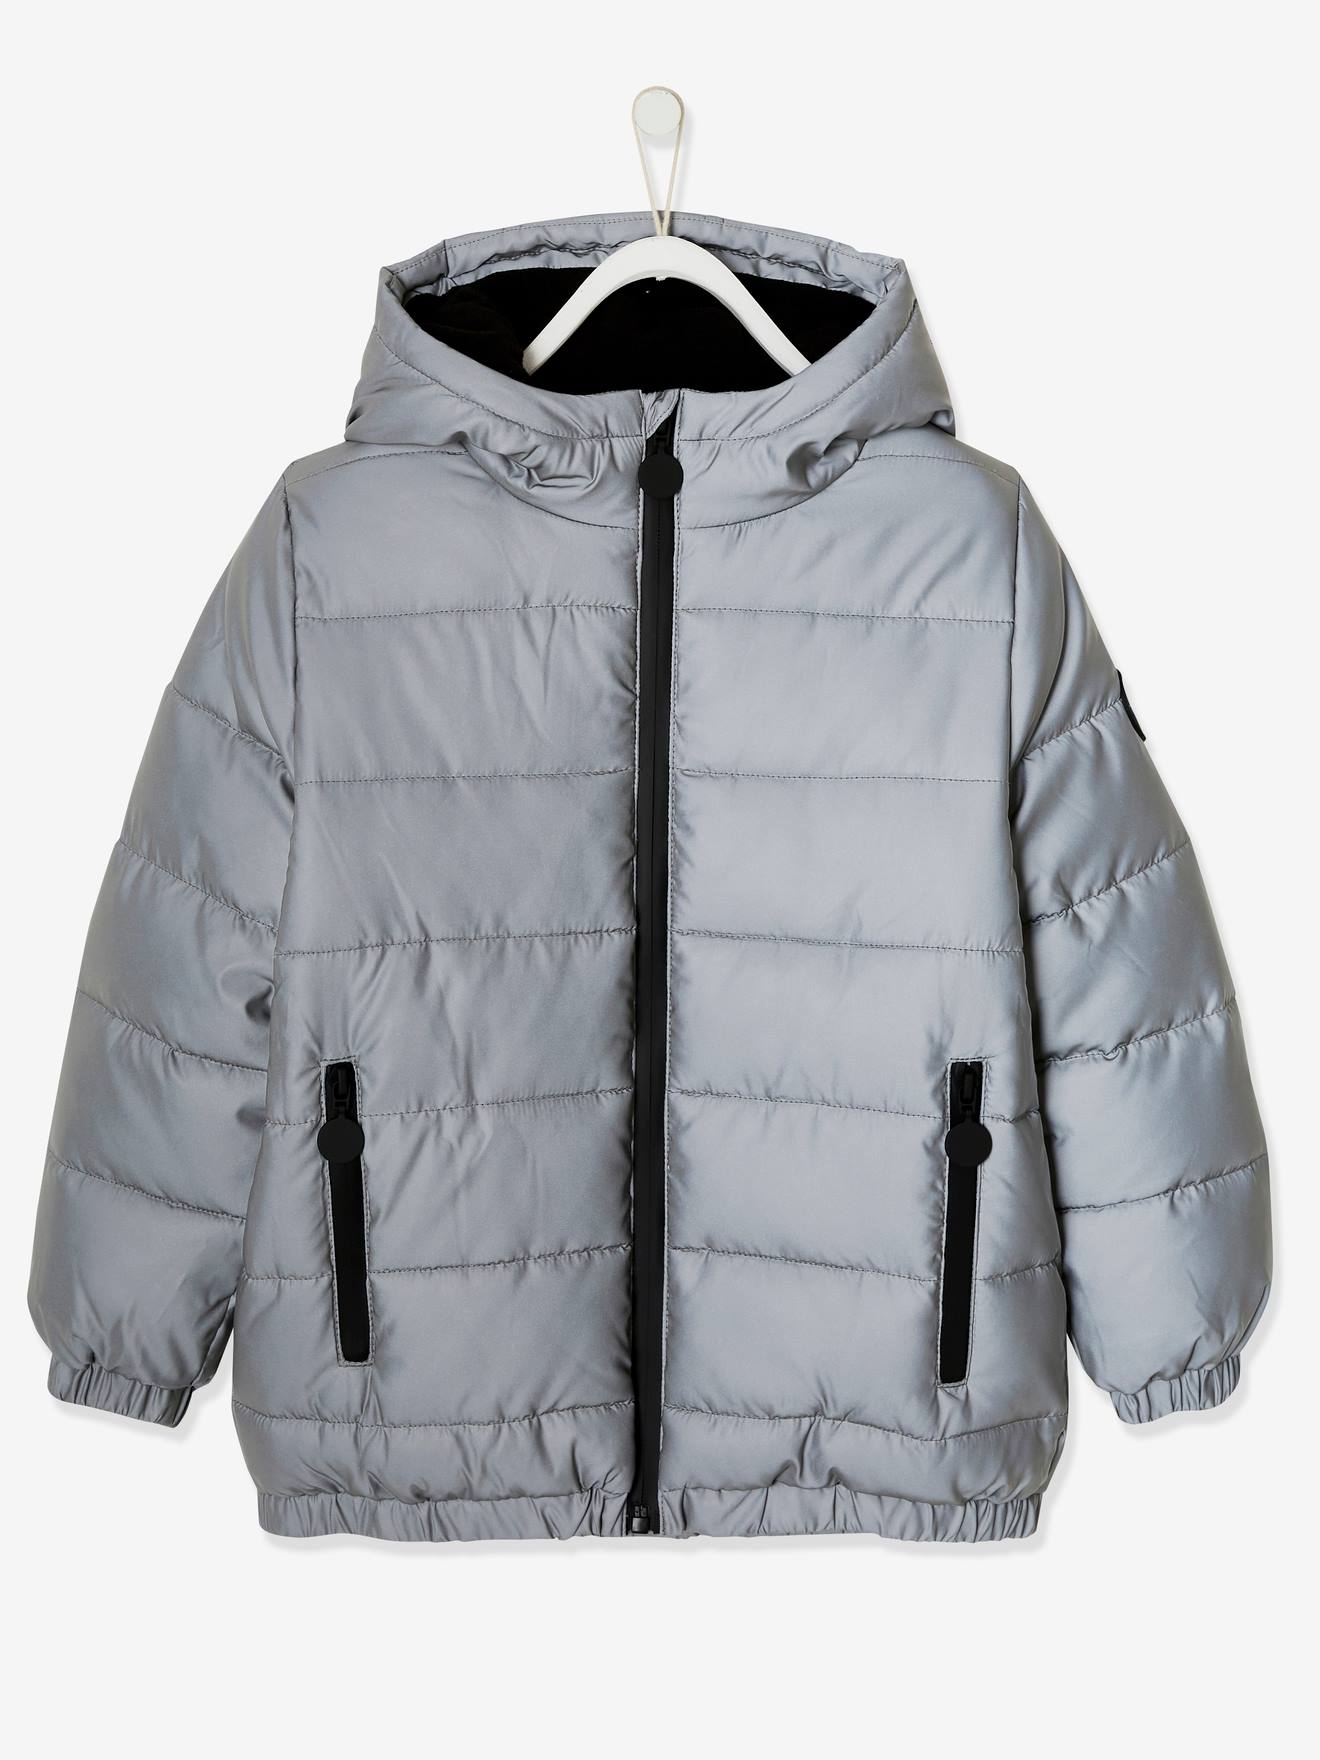 Chaqueta con capucha con forro polar, efecto reflectante y relleno de fibras recicladas, niño gris medio liso con motivos - Vertbaudet